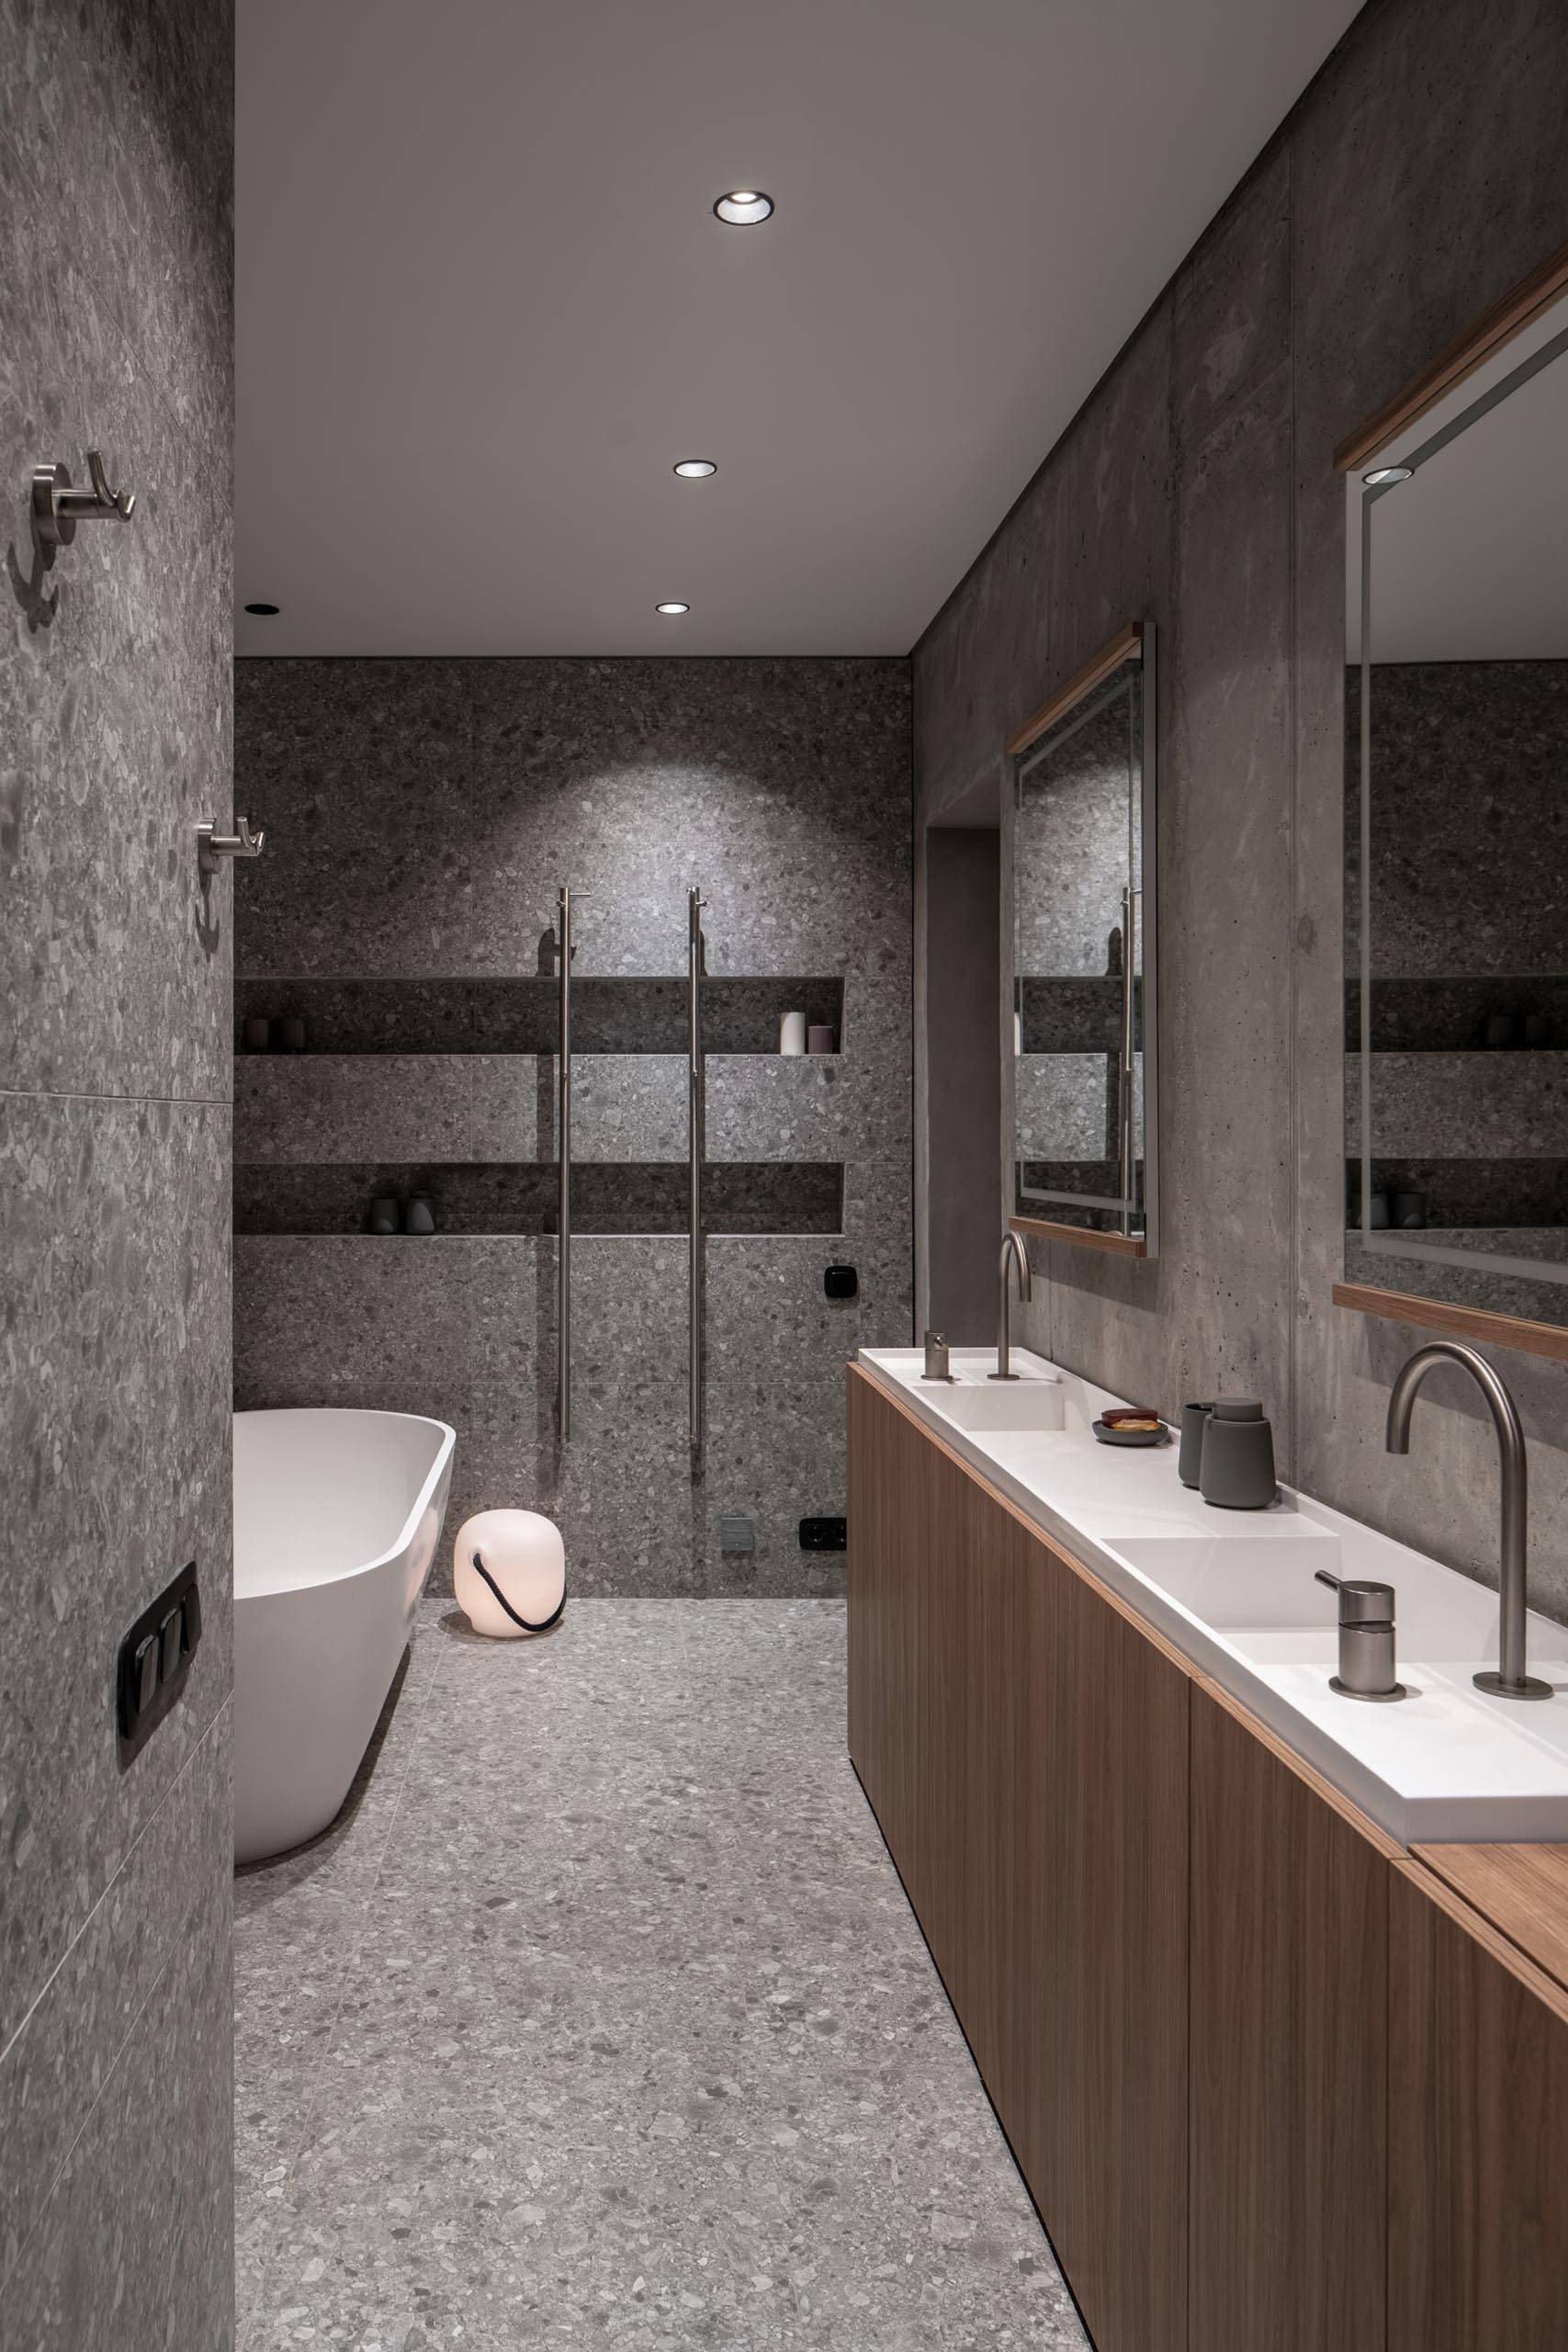 Современная ванная комната с узкой, изготовленной на заказ двойной раковиной, отдельно стоящей белой ванной и душем со встроенными нишами для душа.